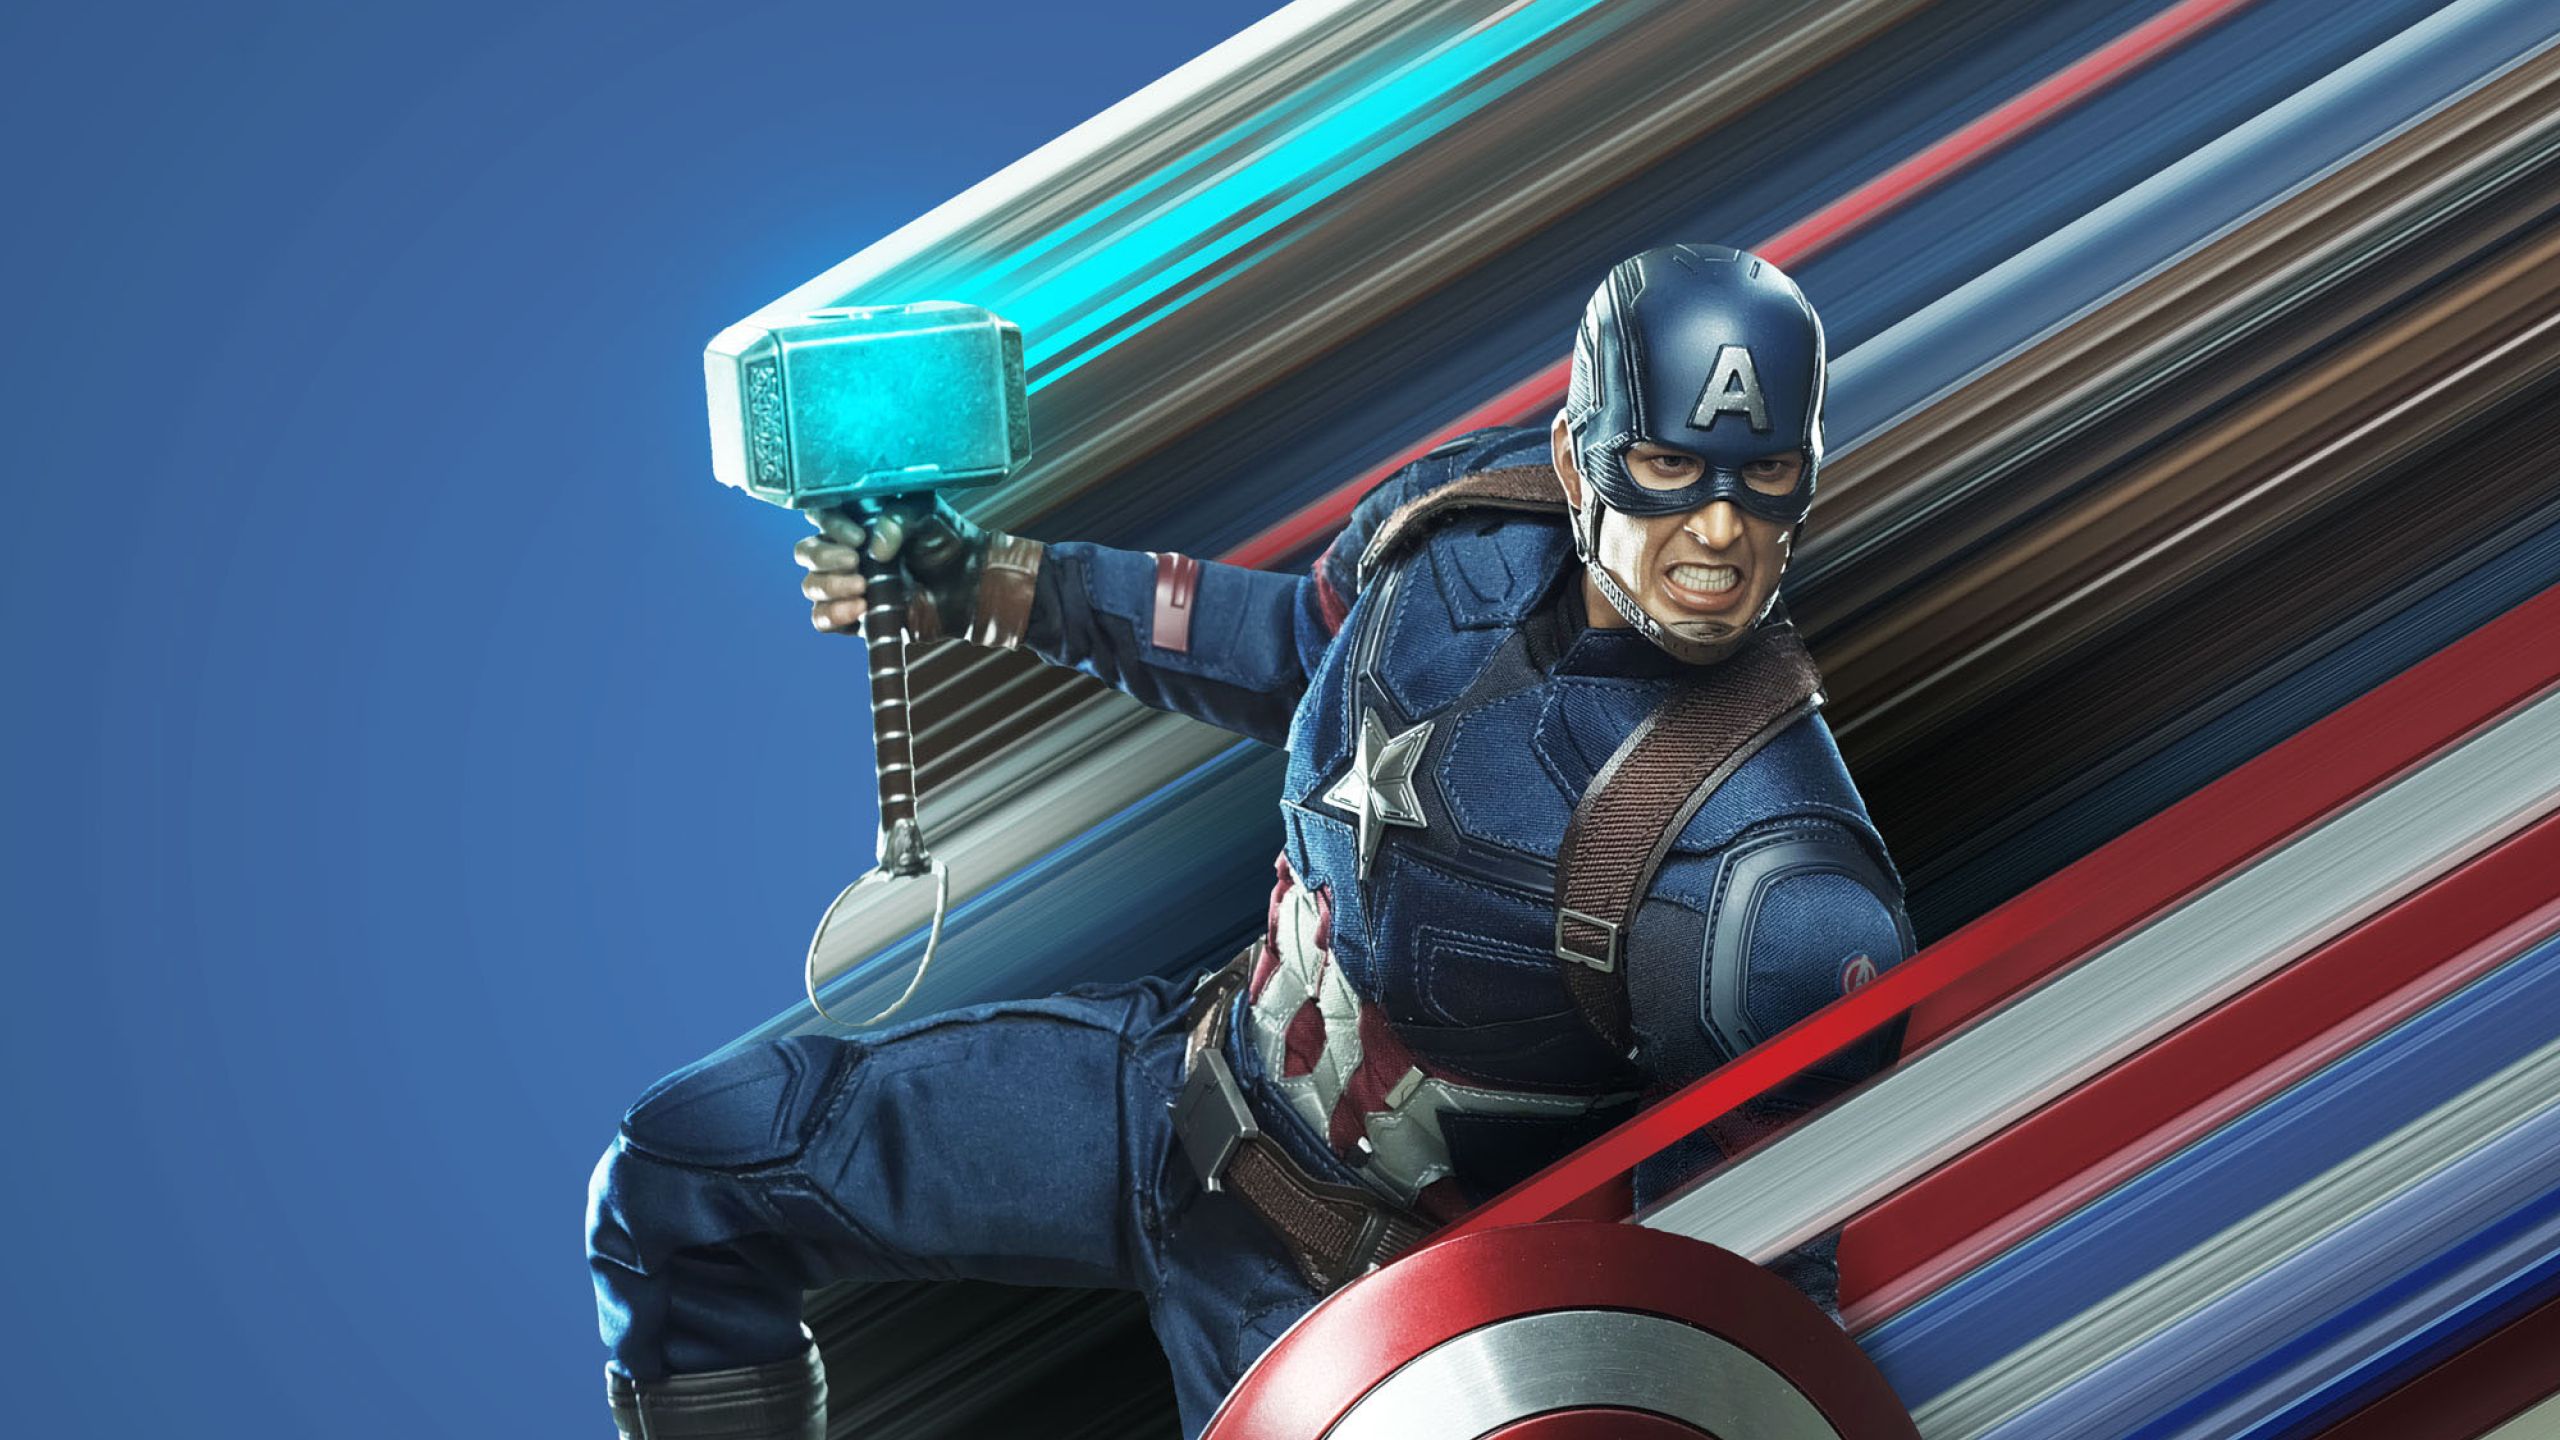 Captain America Avengers Endgame Art 1440P Resolution